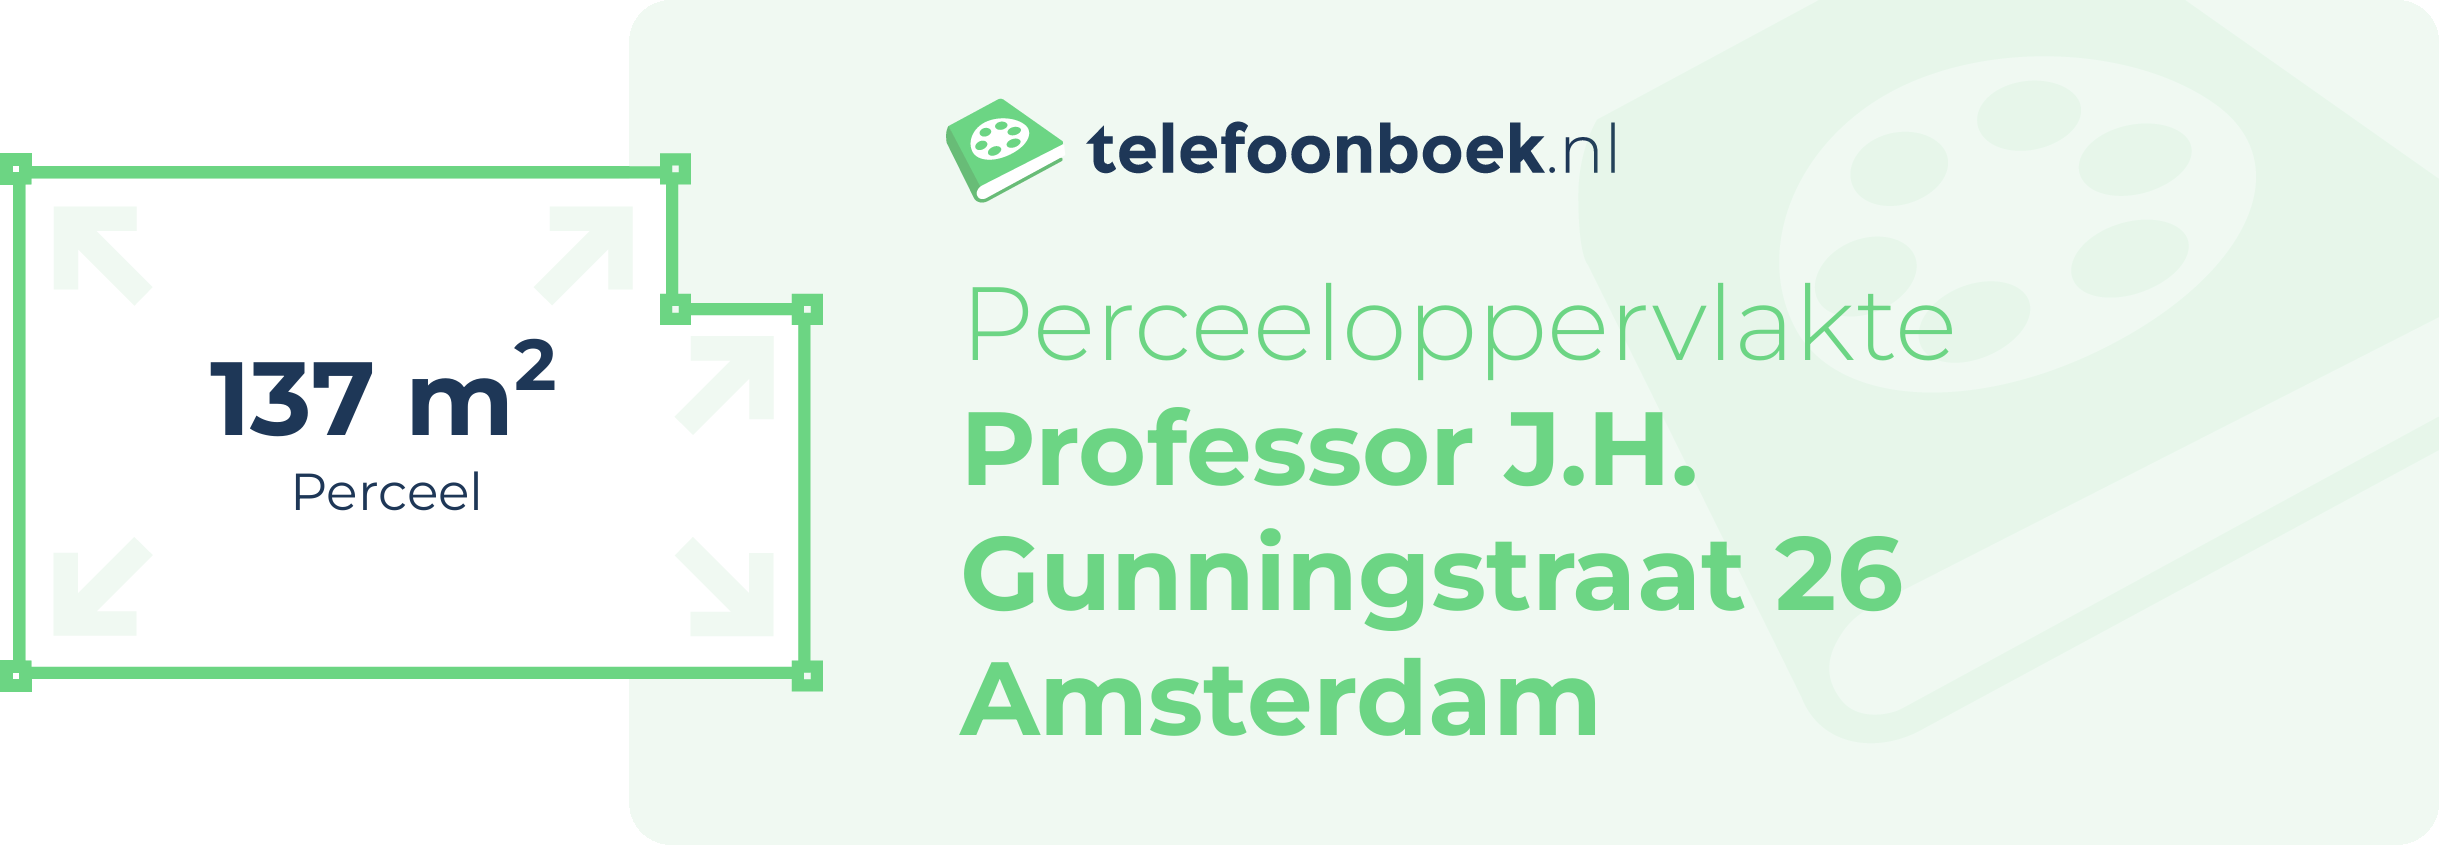 Perceeloppervlakte Professor J.H. Gunningstraat 26 Amsterdam